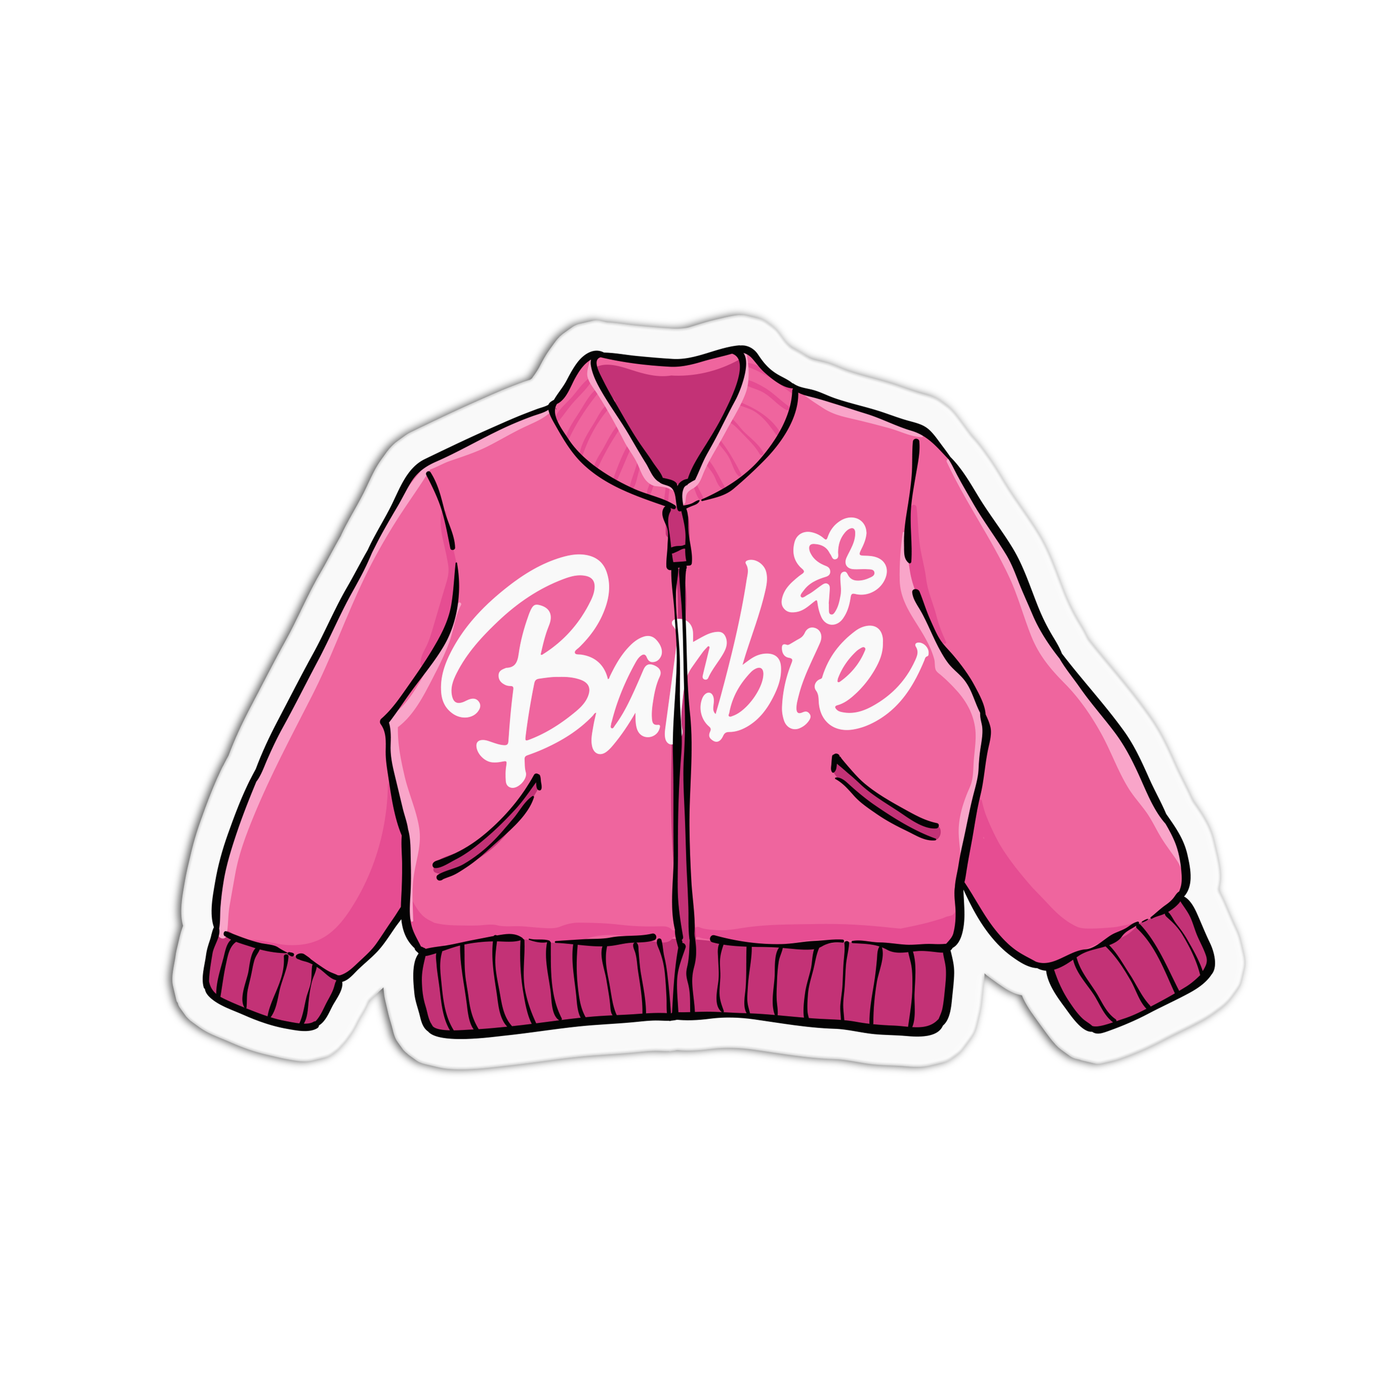 Barbie Jacket Vinyl Textured Sticker